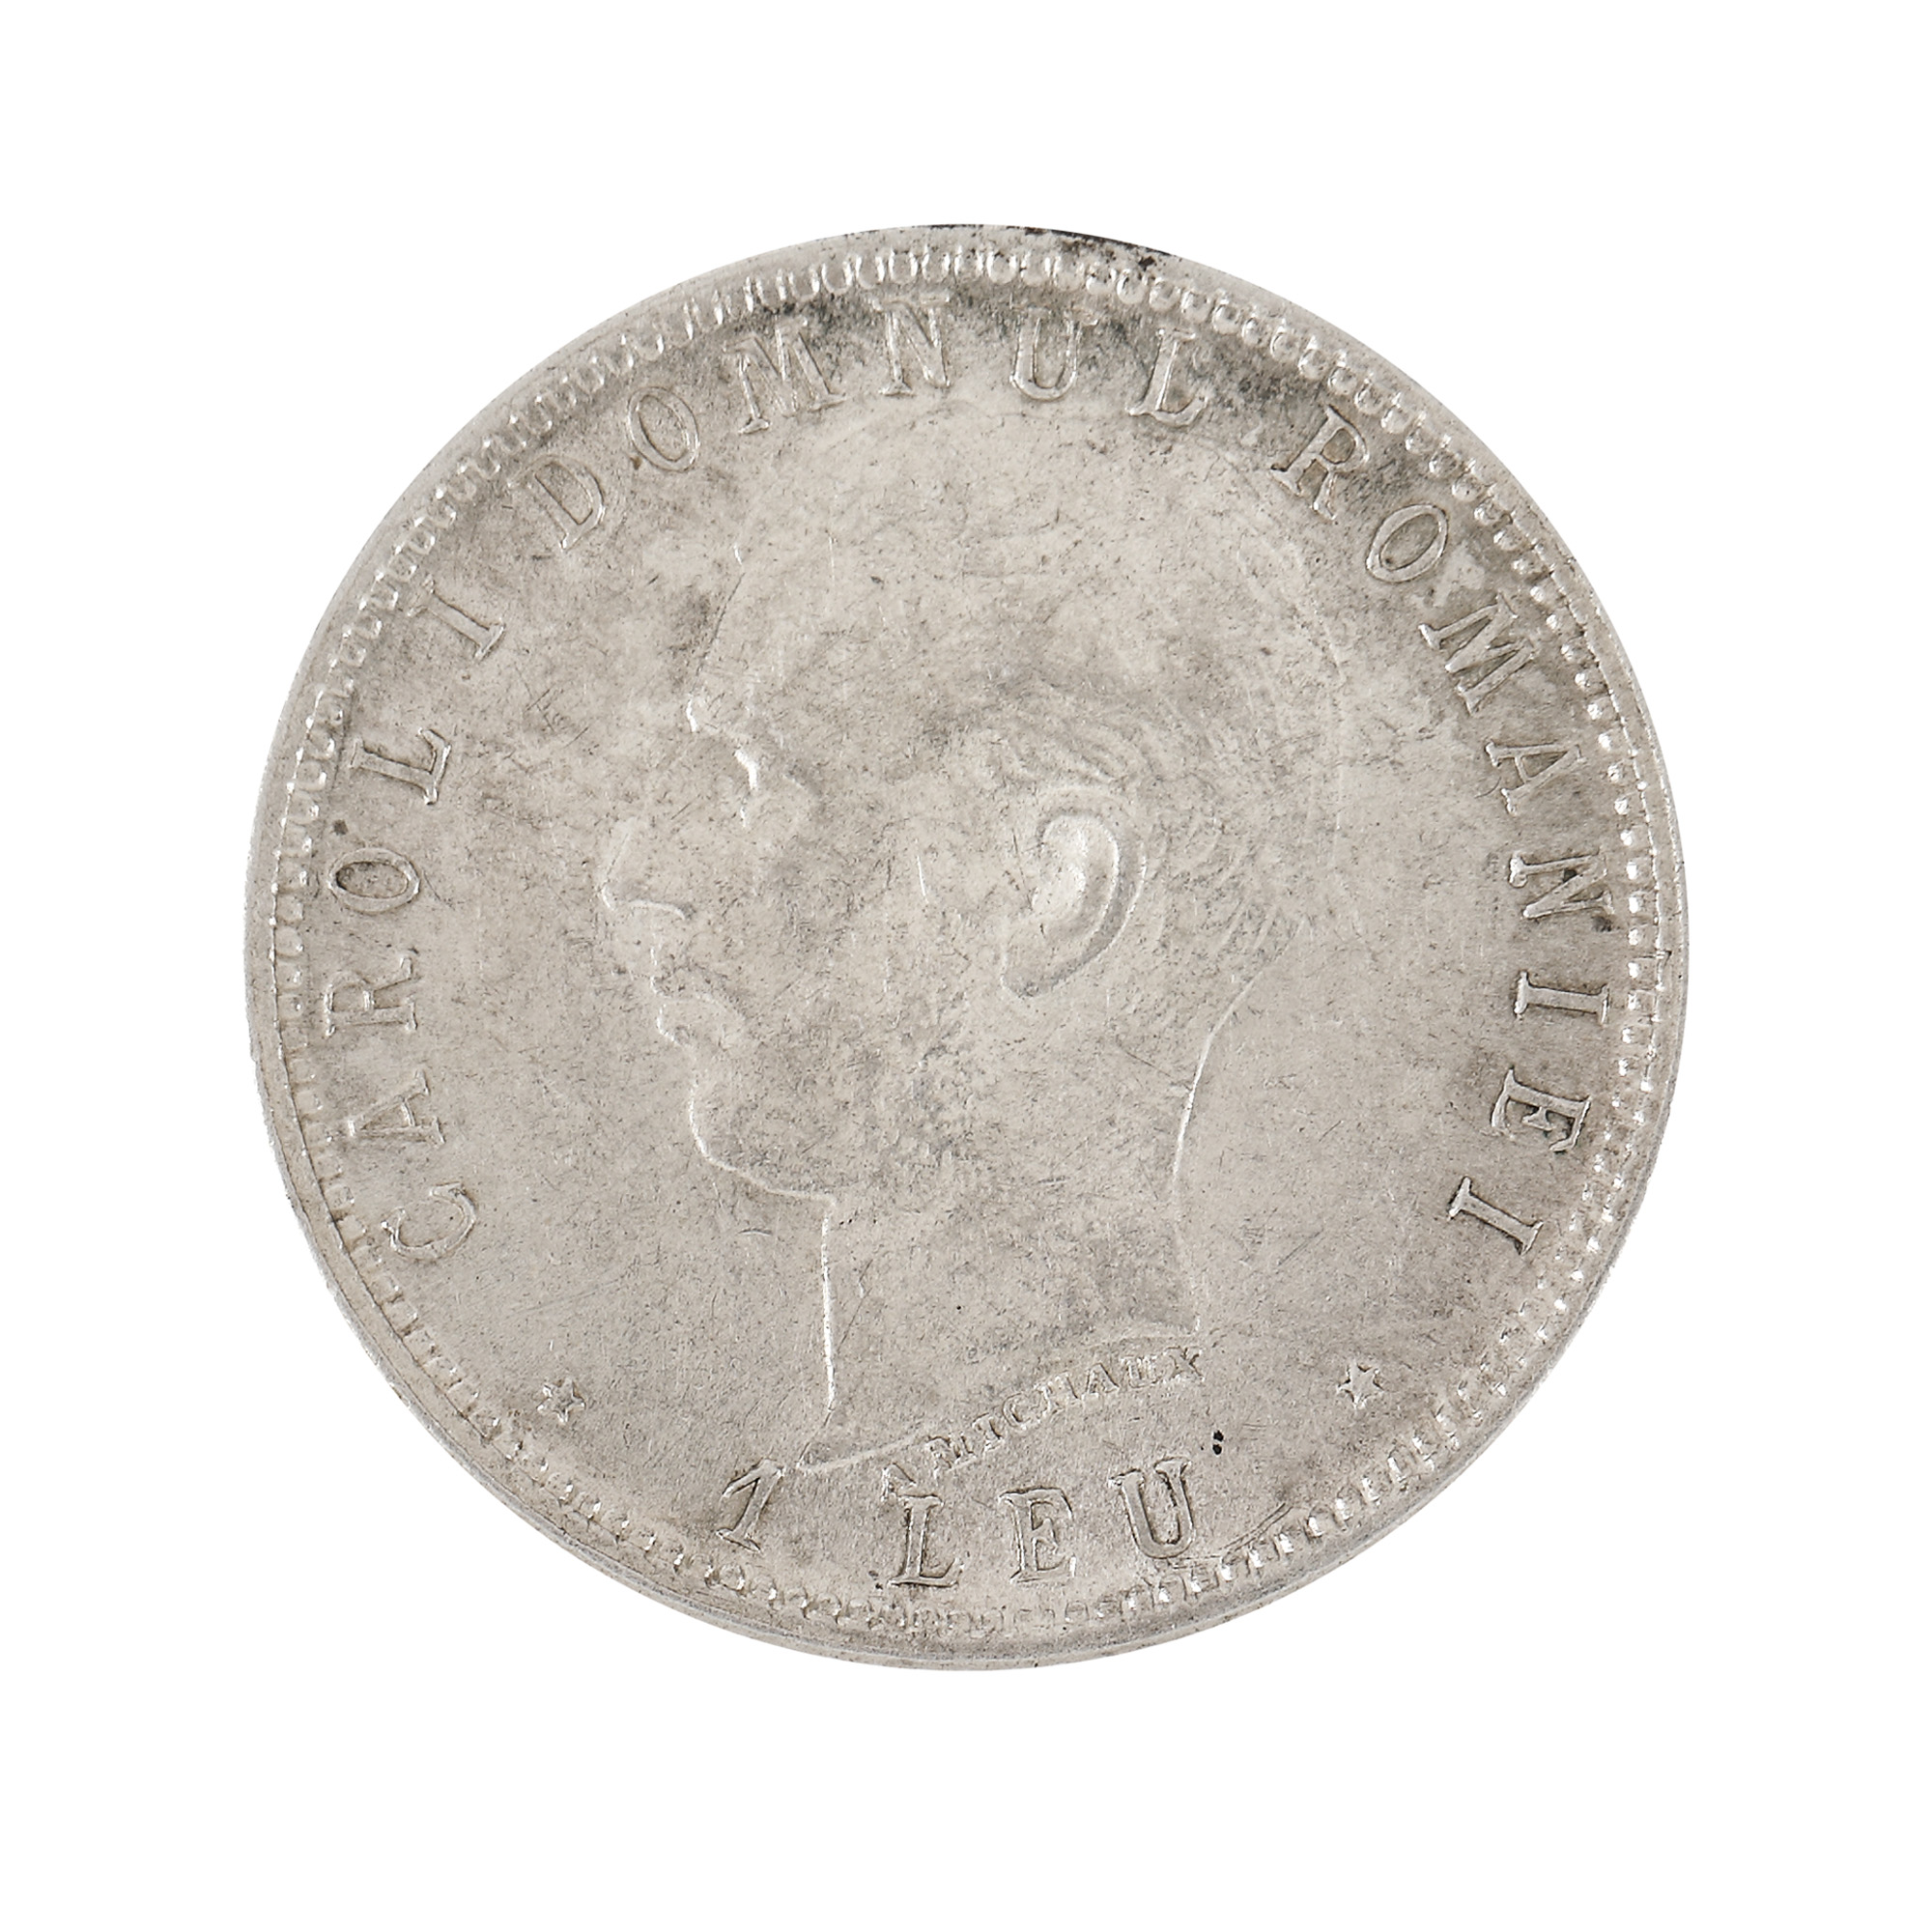 1 Leu 1906 coin, silver